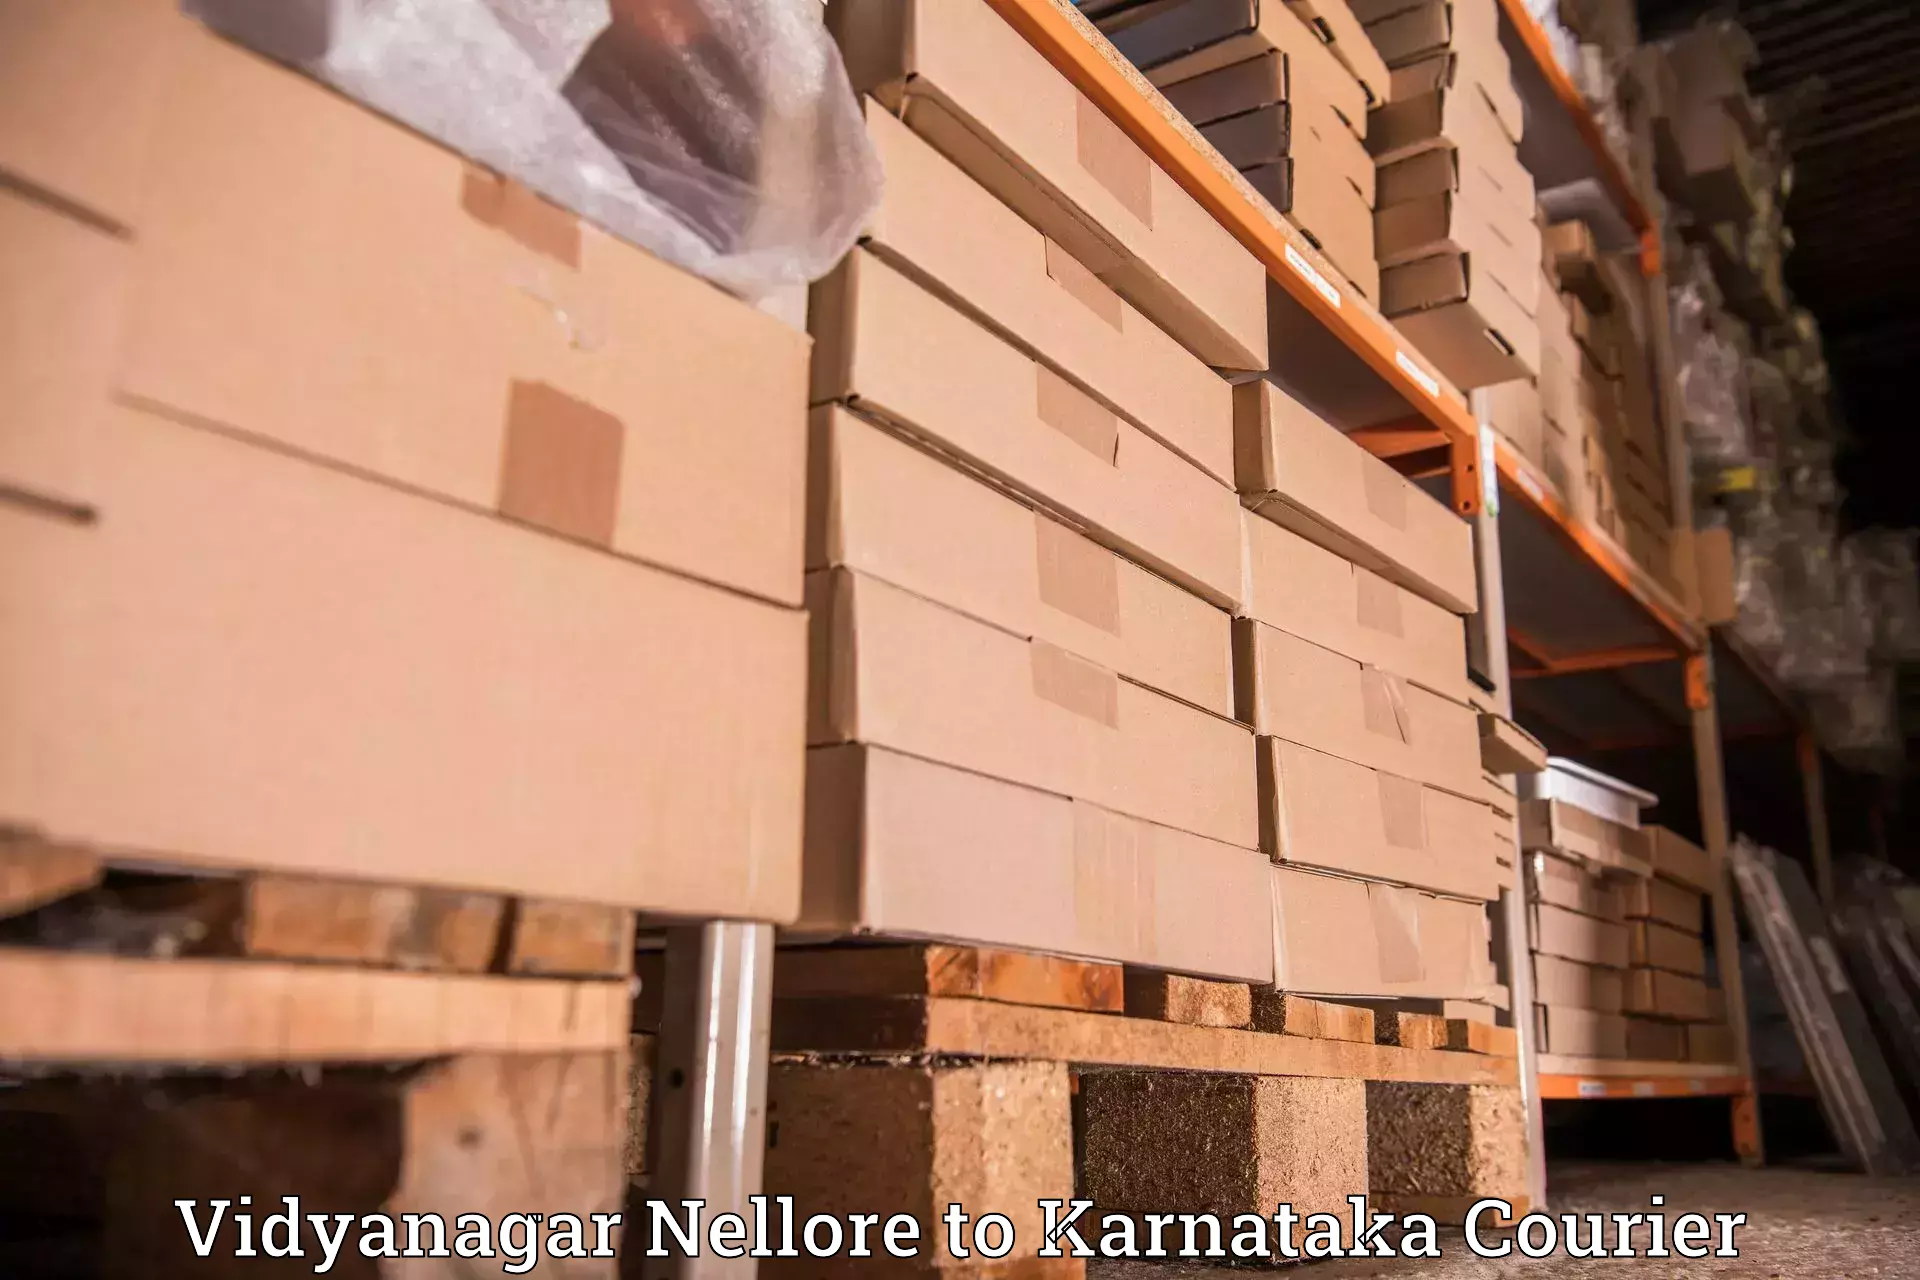 International parcel service Vidyanagar Nellore to Karnataka